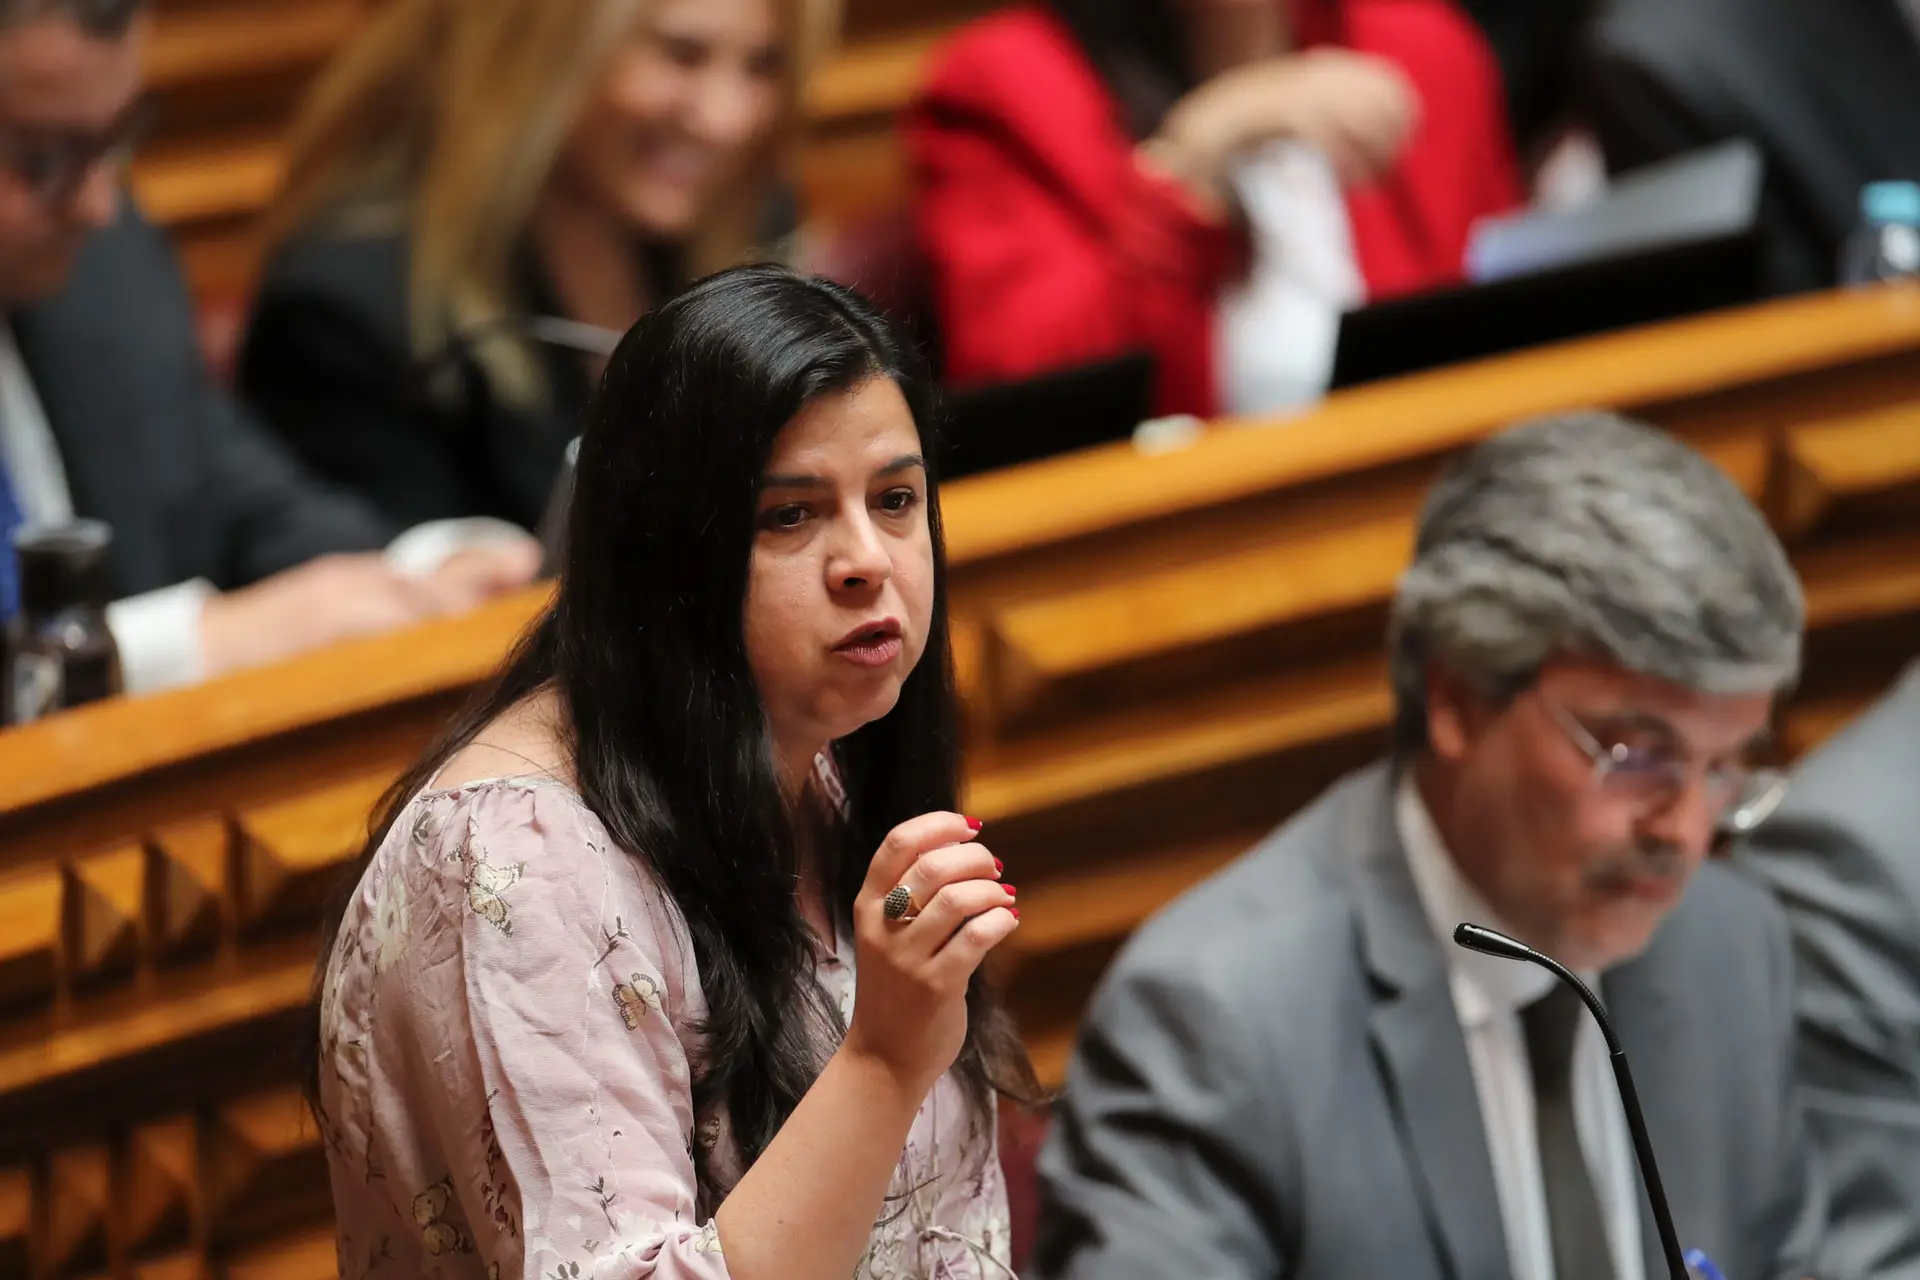 A deputada única do PAN Inês Sousa Real , durante a sessão plenária de debate na especialidade do Orçamento de Estado 2022, na Assembleia da República, em Lisboa, 23 maio 2022. MANUEL DE ALMEIDA / LUSA